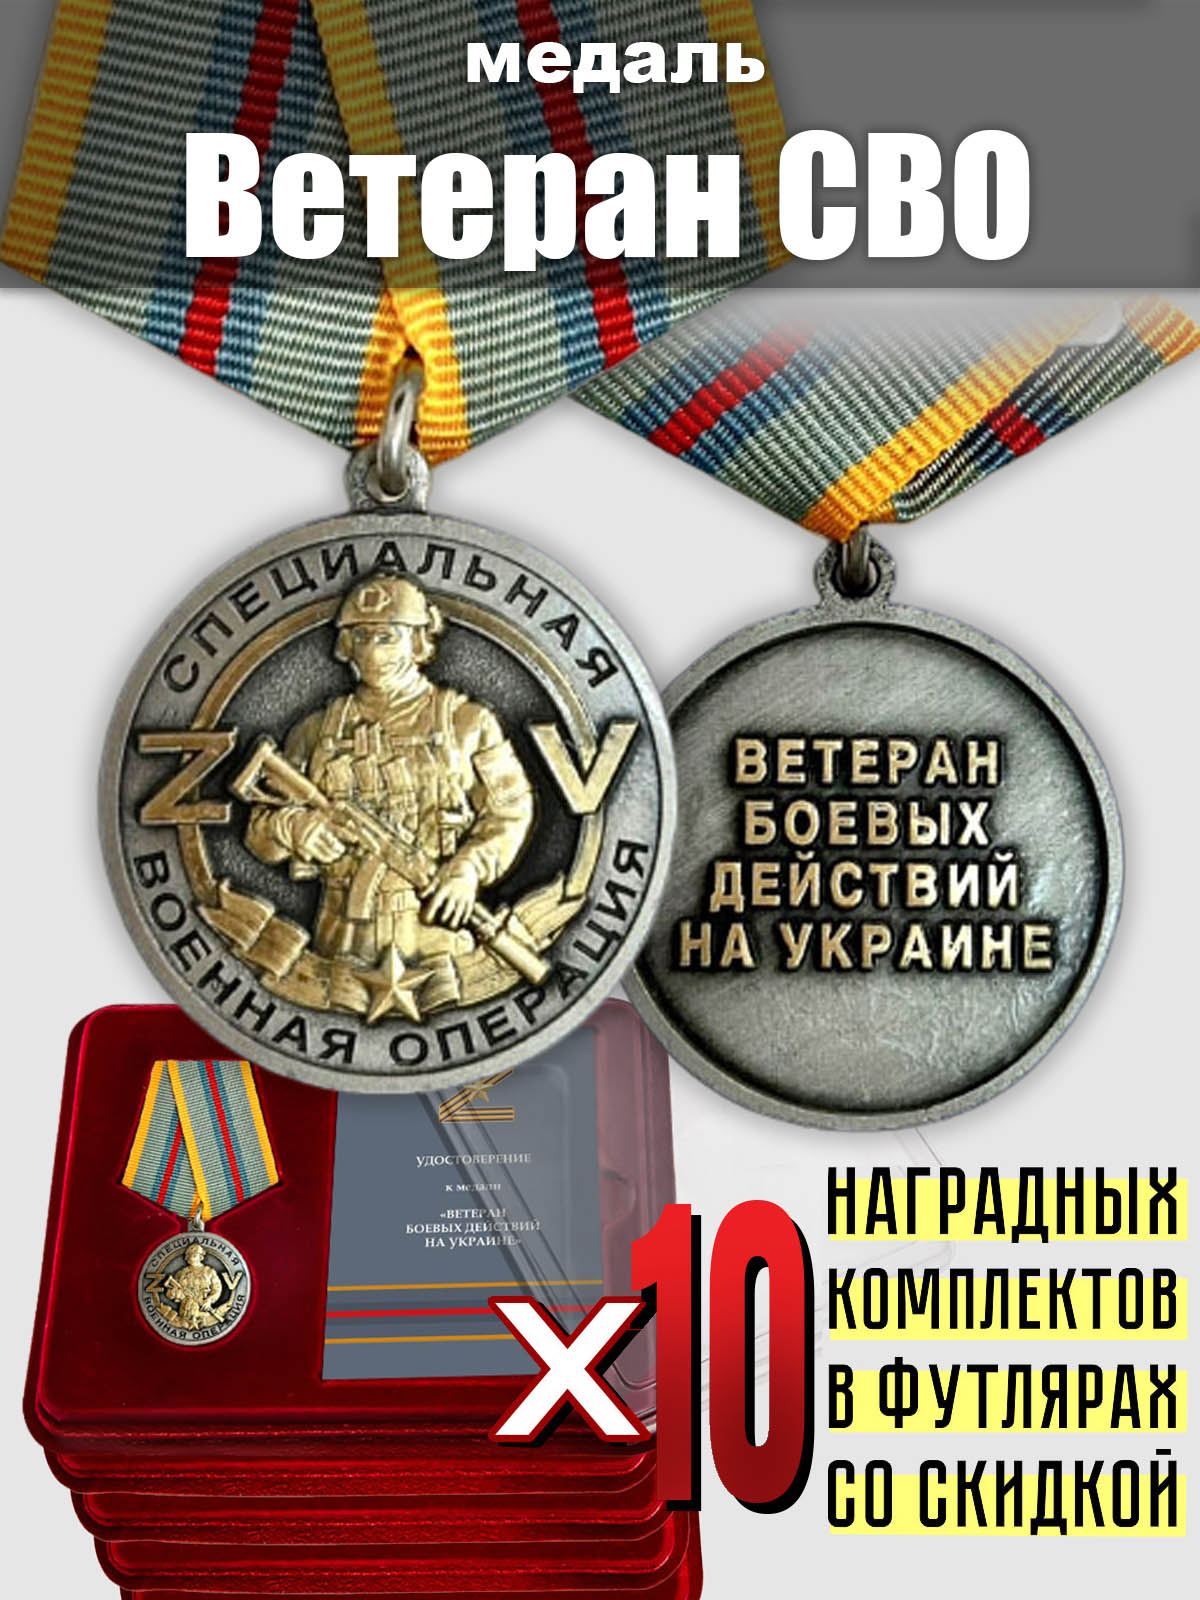 Медали для ветеранов СВО (10 шт.) 